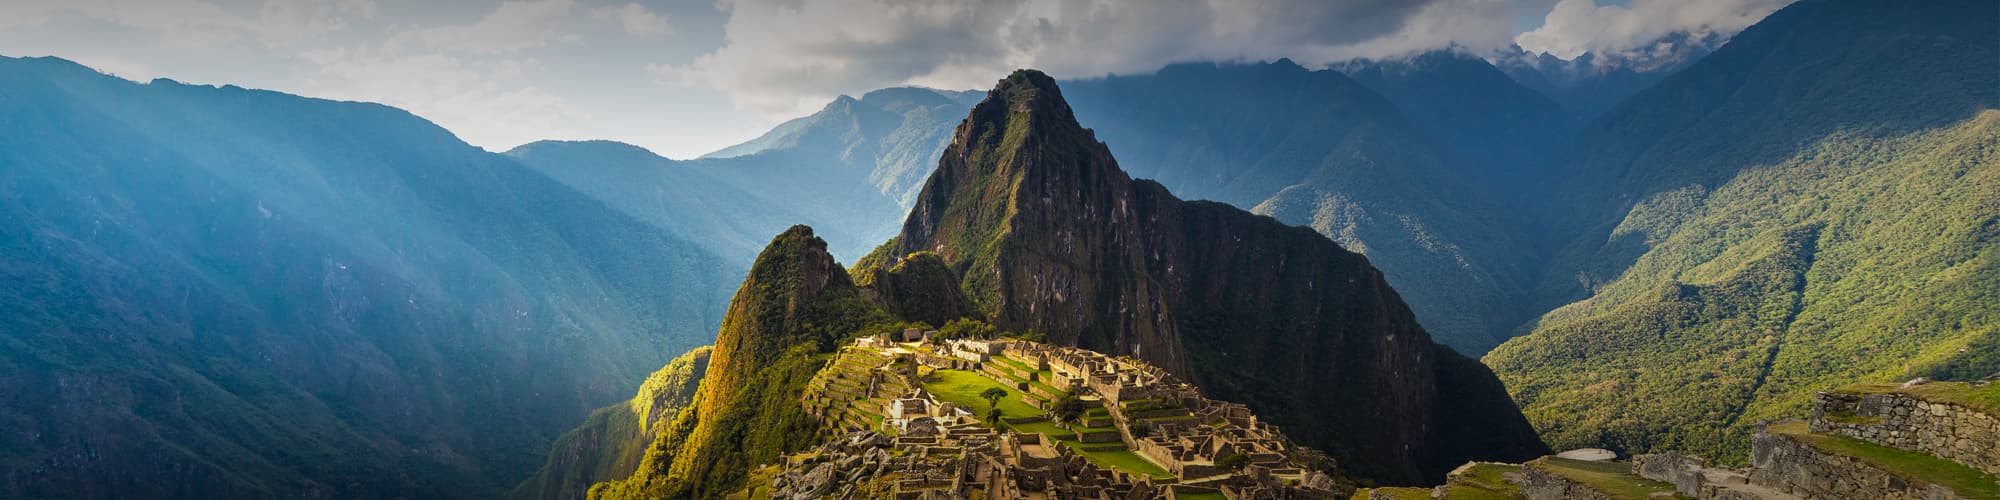 Voyage sur mesure Cuzco et Machu Picchu © fbxx